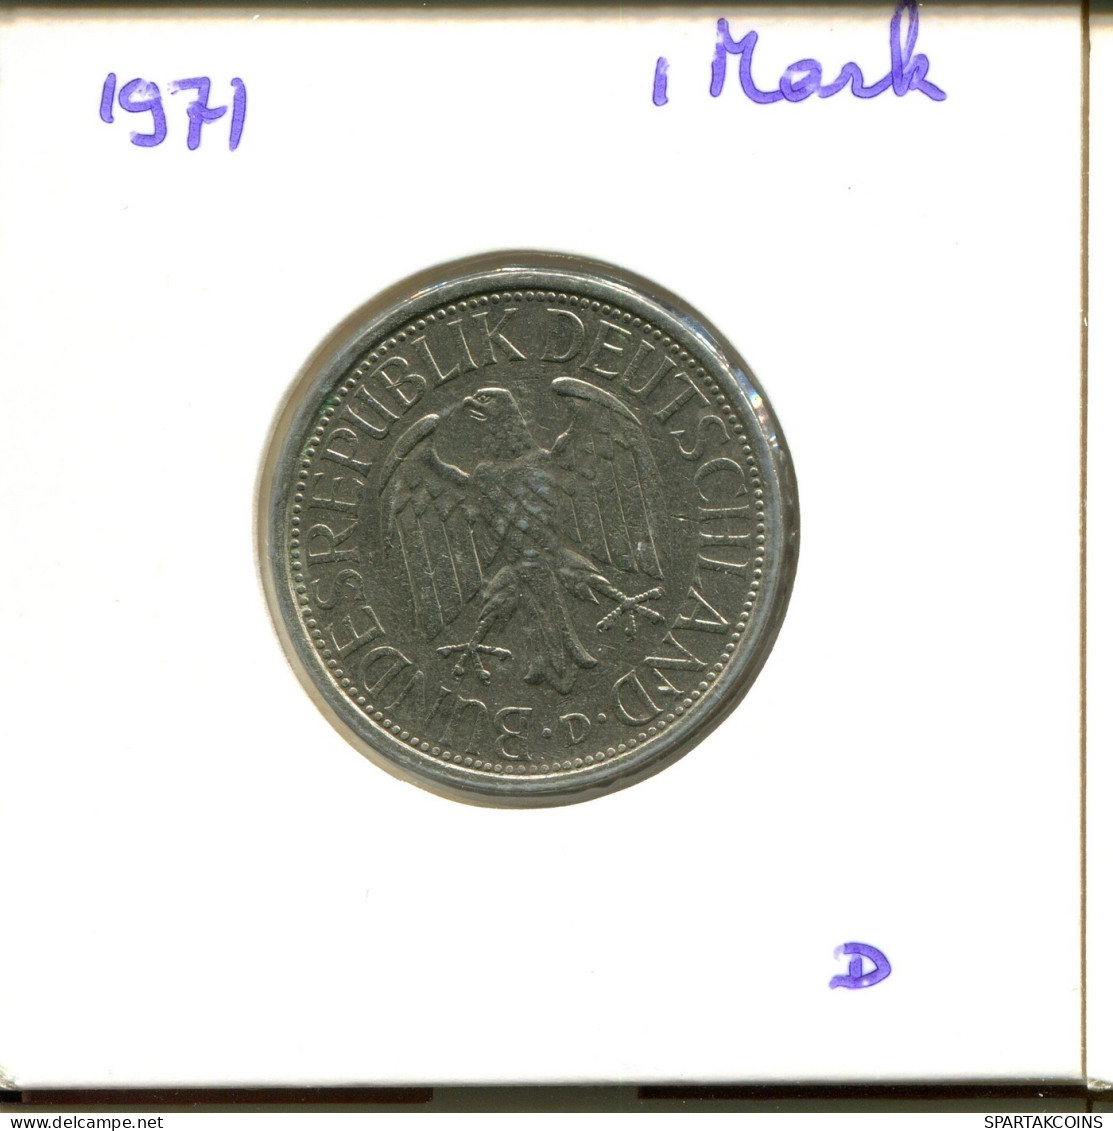 1 DM 1971 D BRD DEUTSCHLAND Münze GERMANY #DA842.D.A - 1 Mark